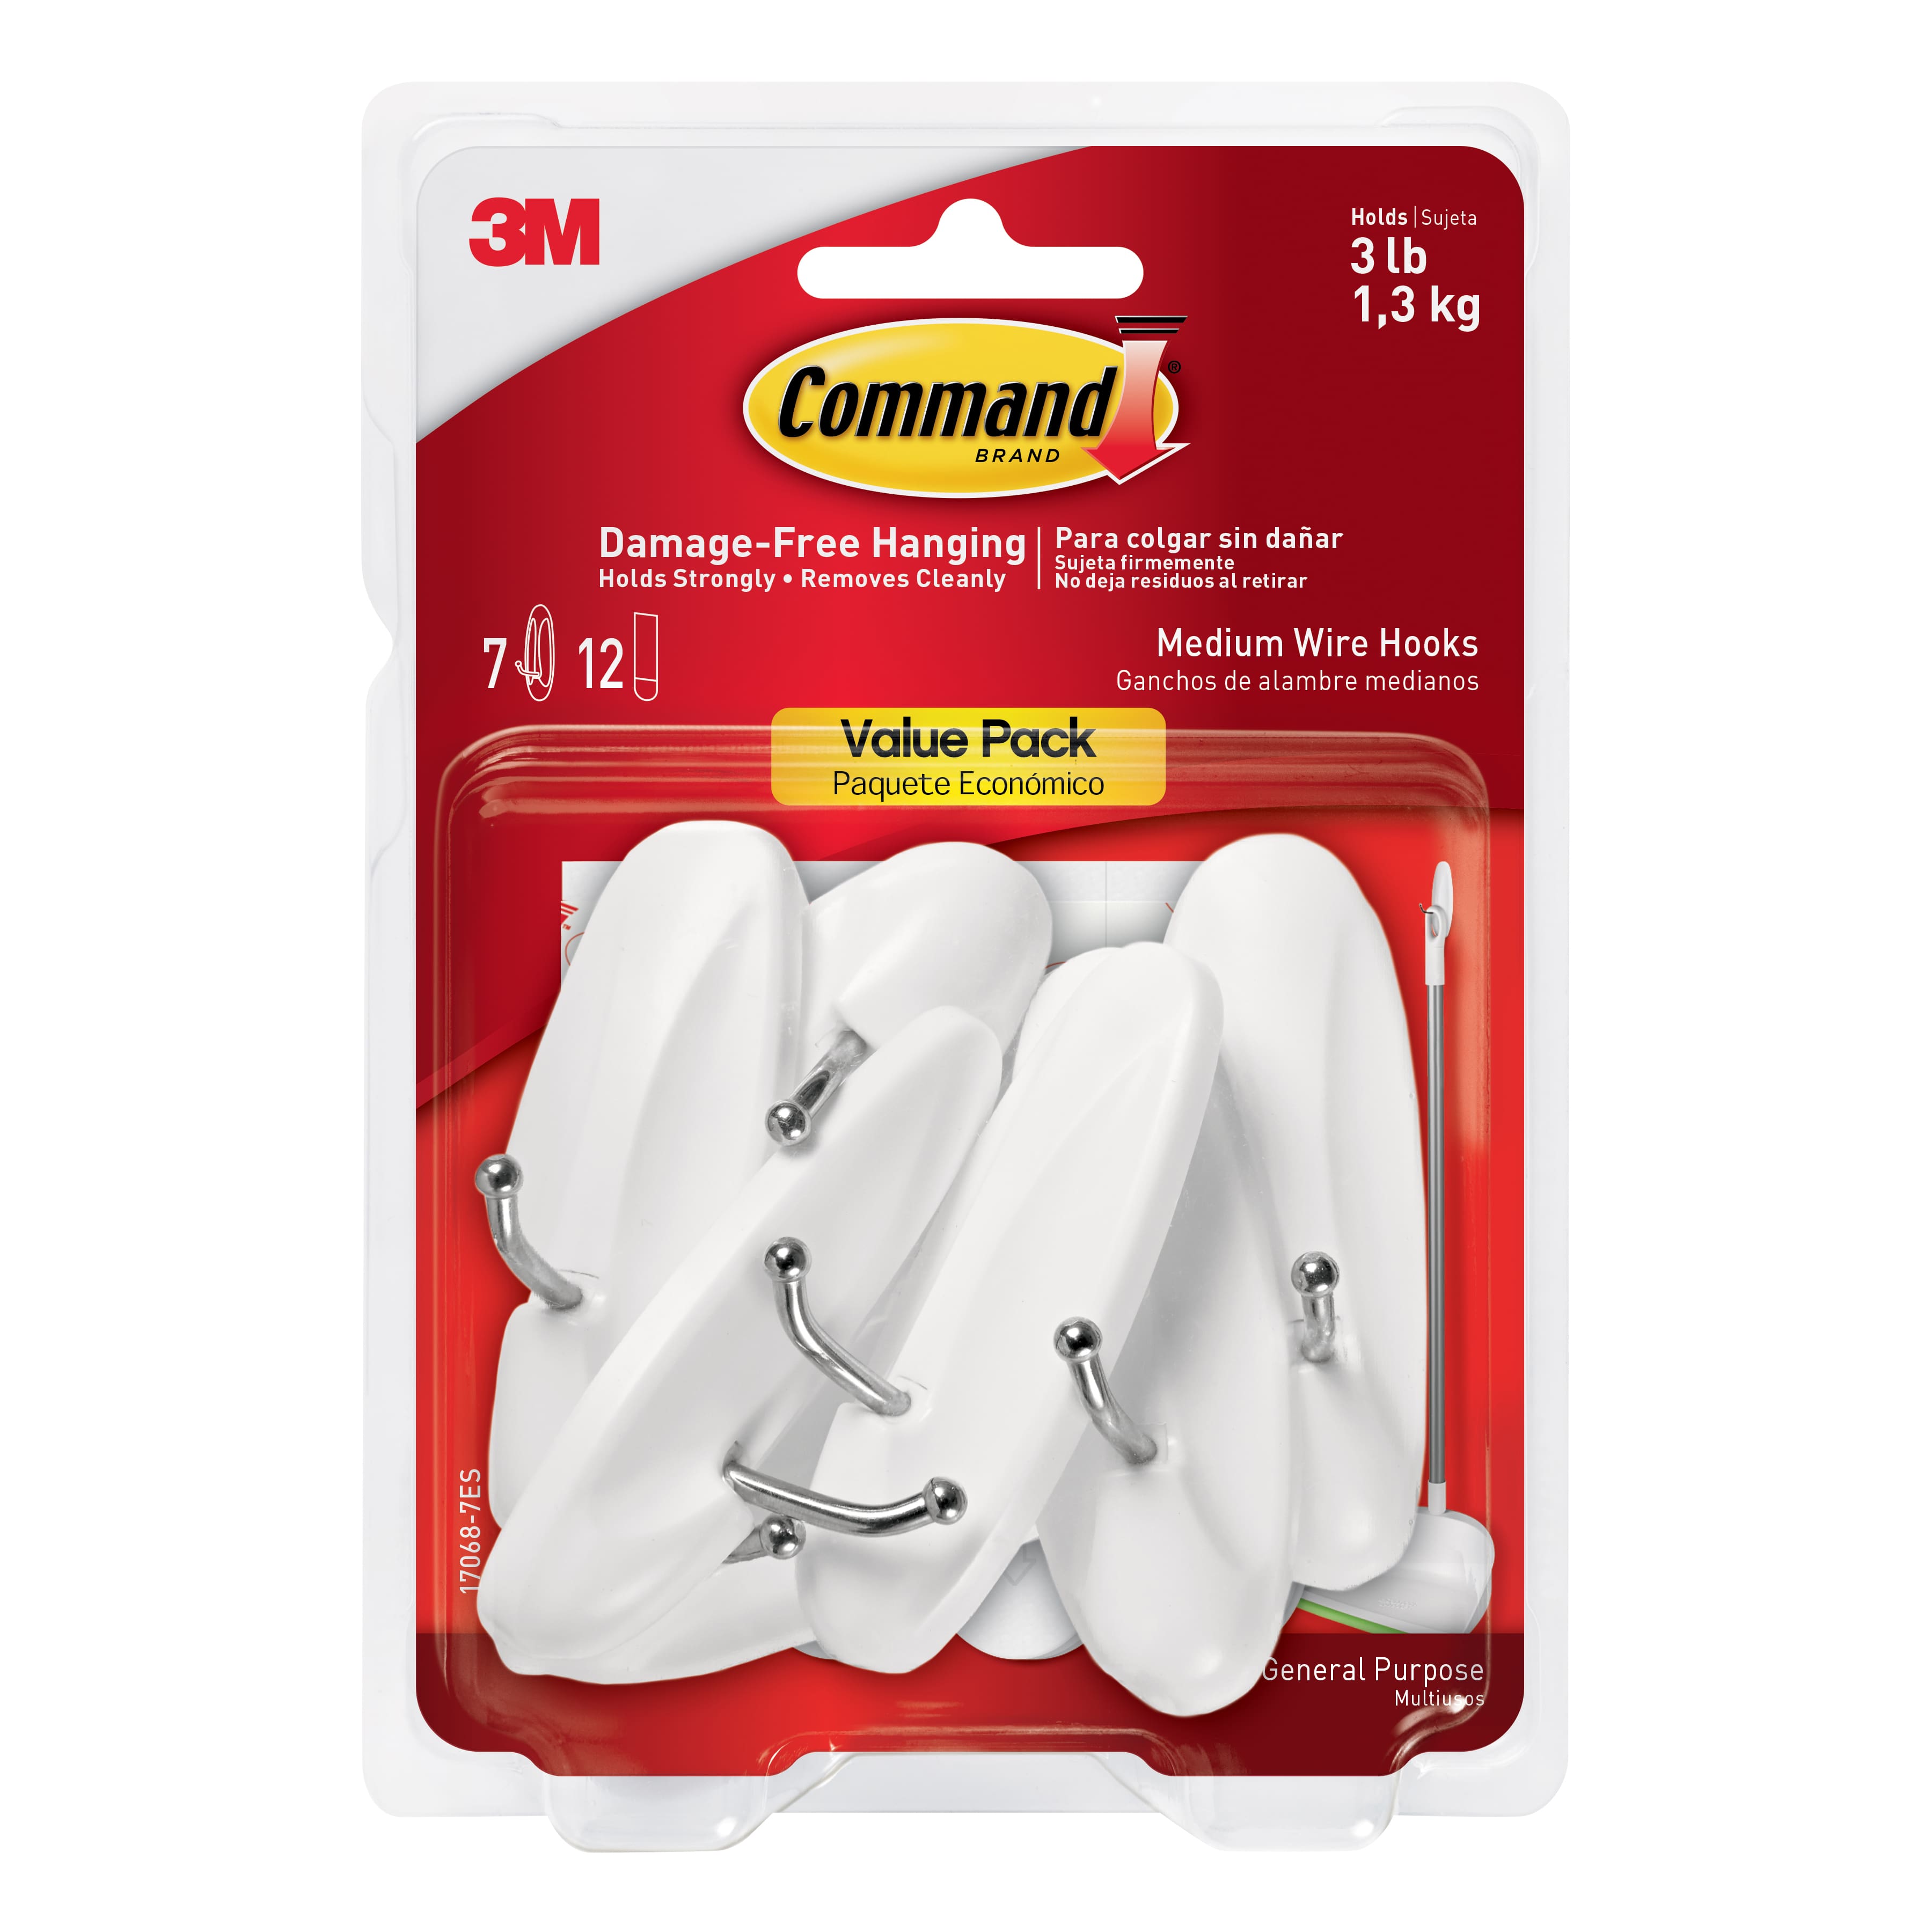 Buy in Bulk - 12 Packs: 7 ct. (84 total) Command™ White Medium